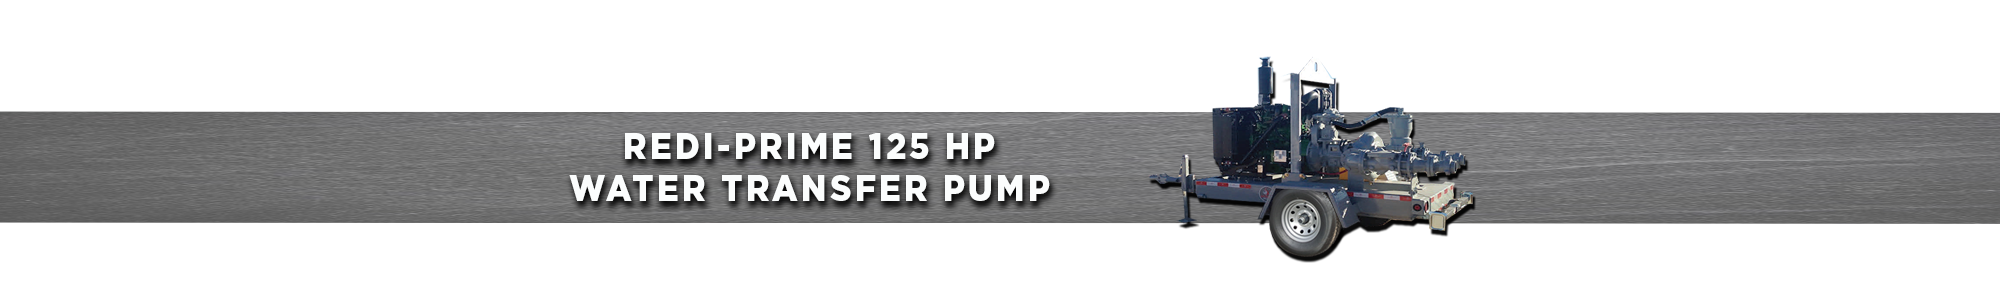 125 HP Redi-Prime Water Transfer Pump